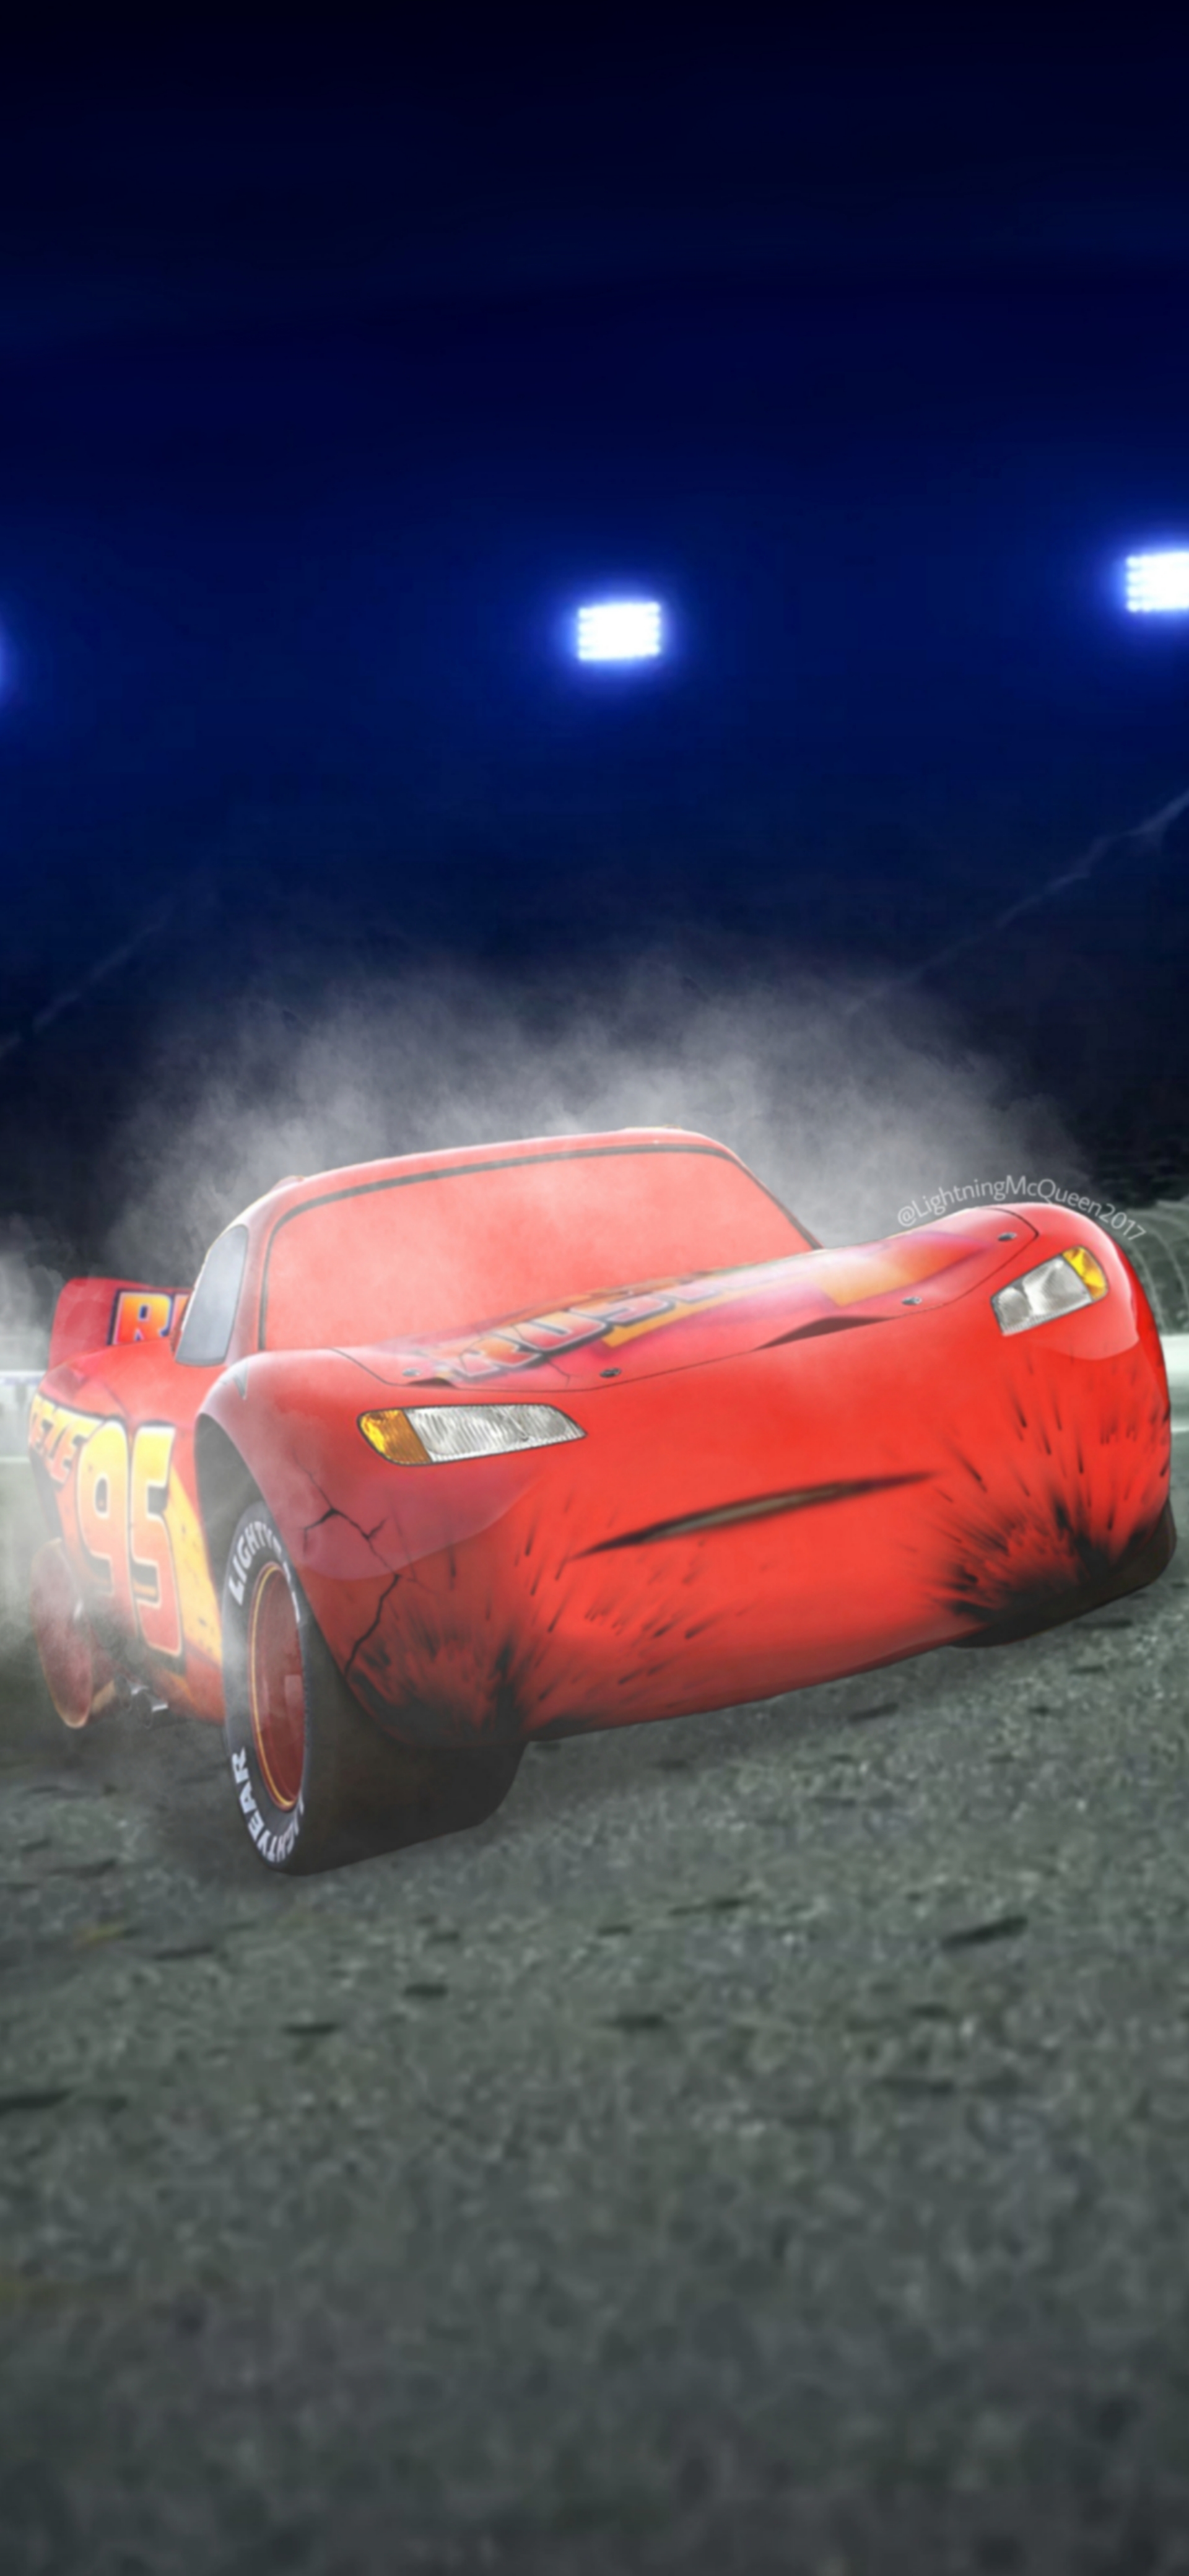 Cars 3 Lightning McQueen's Crash by LightningMcQueen2017 on DeviantArt